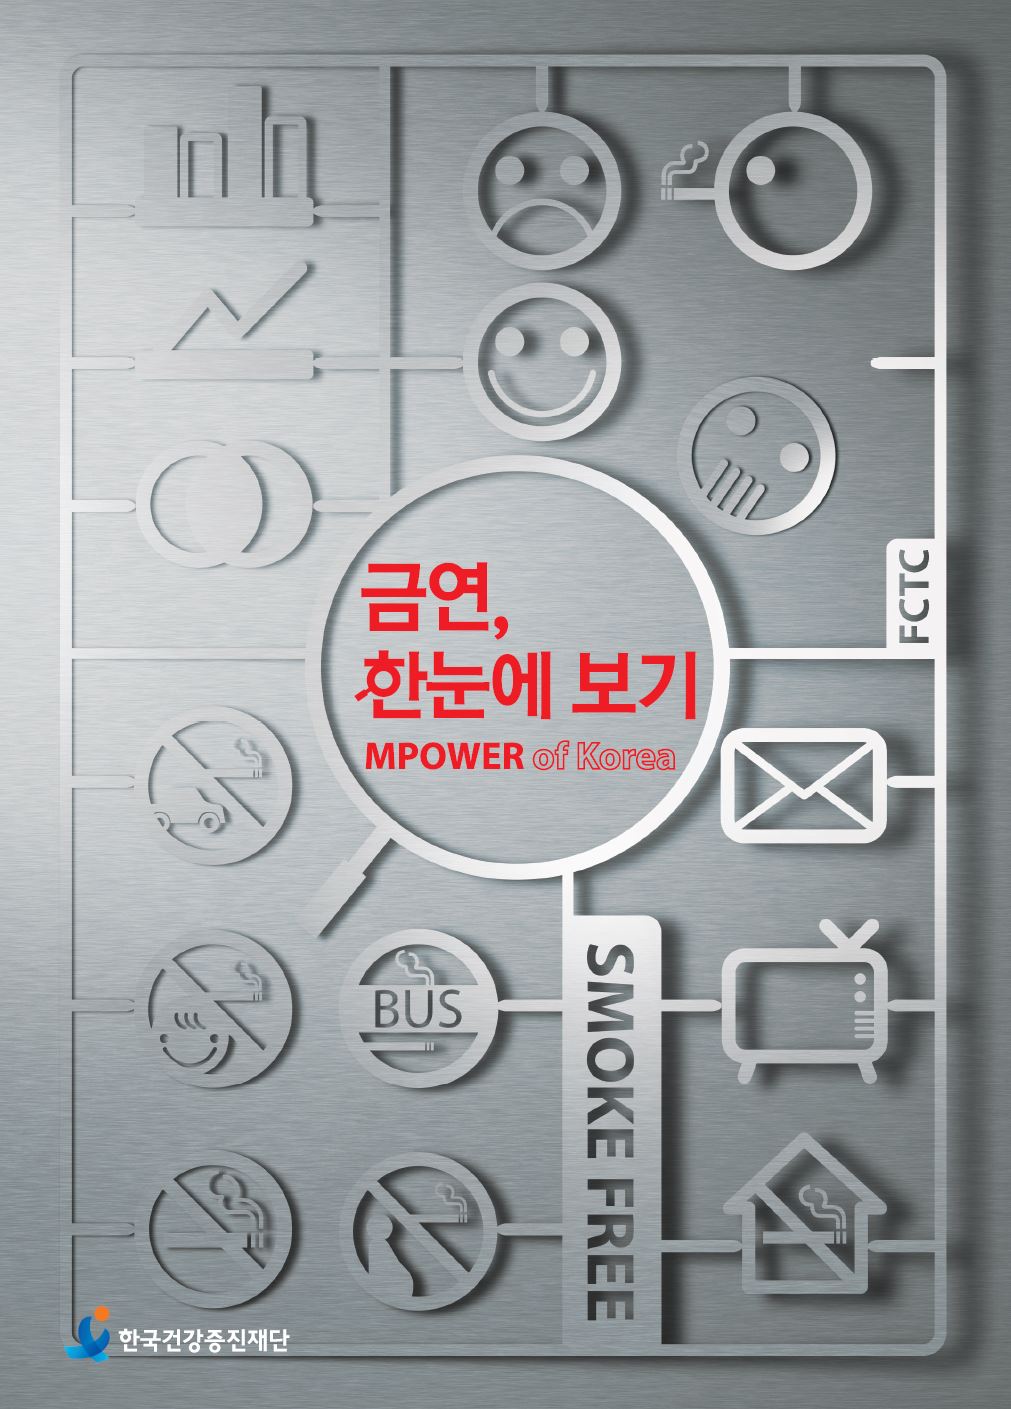 금연, 한눈에 보기 MPOWER of Korea 2013게시물의 이미지